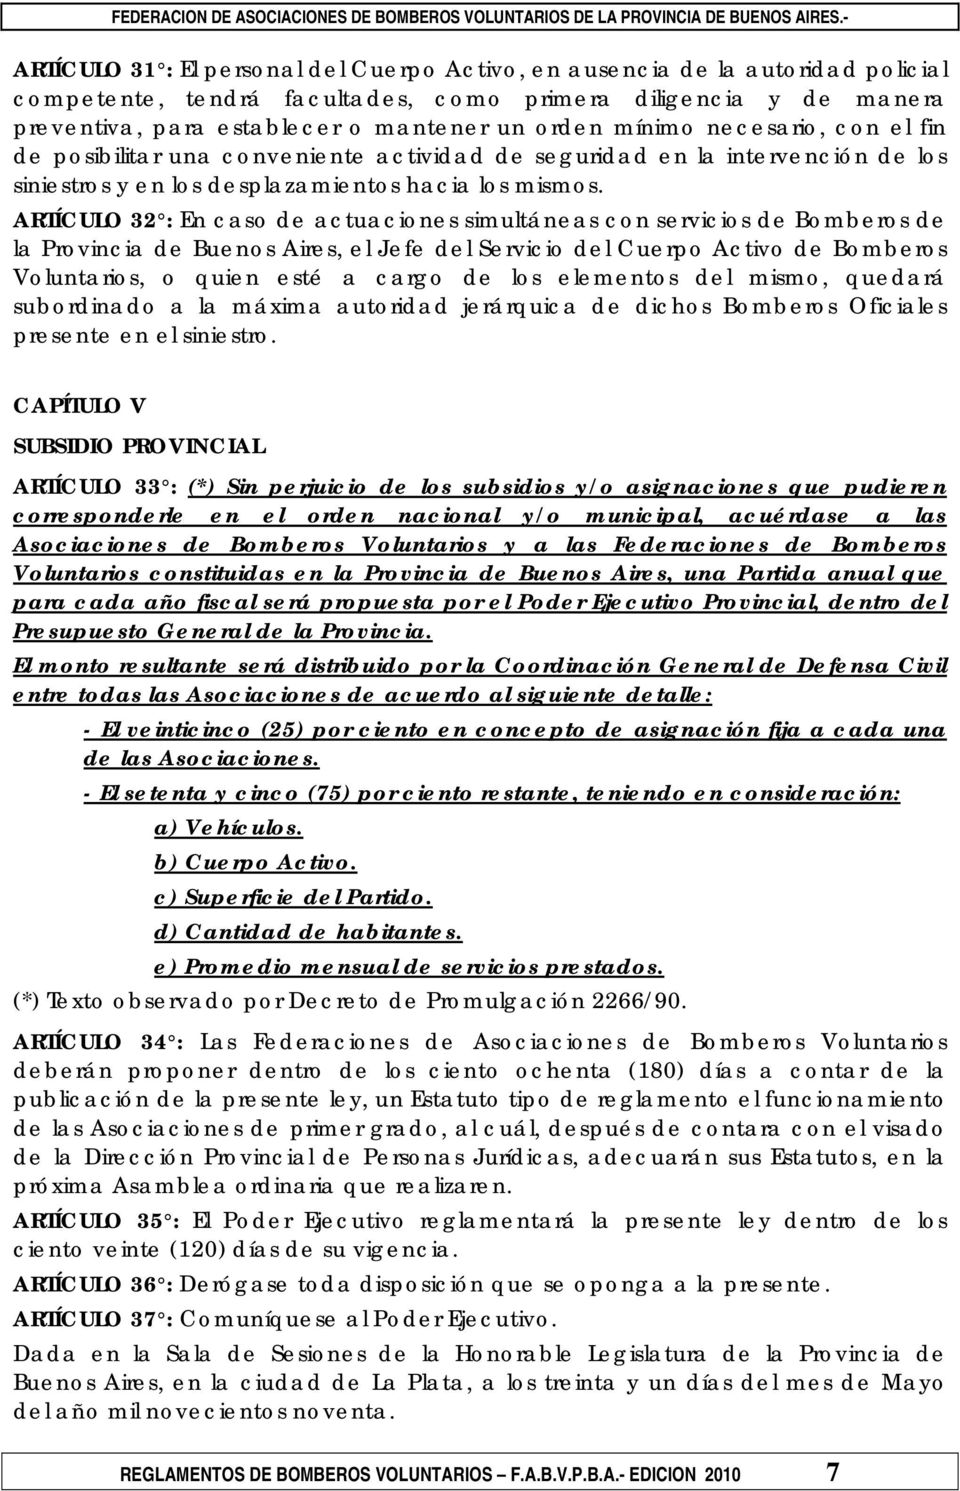 ARTÍCULO 32 : En caso de actuaciones simultáneas con servicios de Bomberos de la Provincia de Buenos Aires, el Jefe del Servicio del Cuerpo Activo de Bomberos Voluntarios, o quien esté a cargo de los